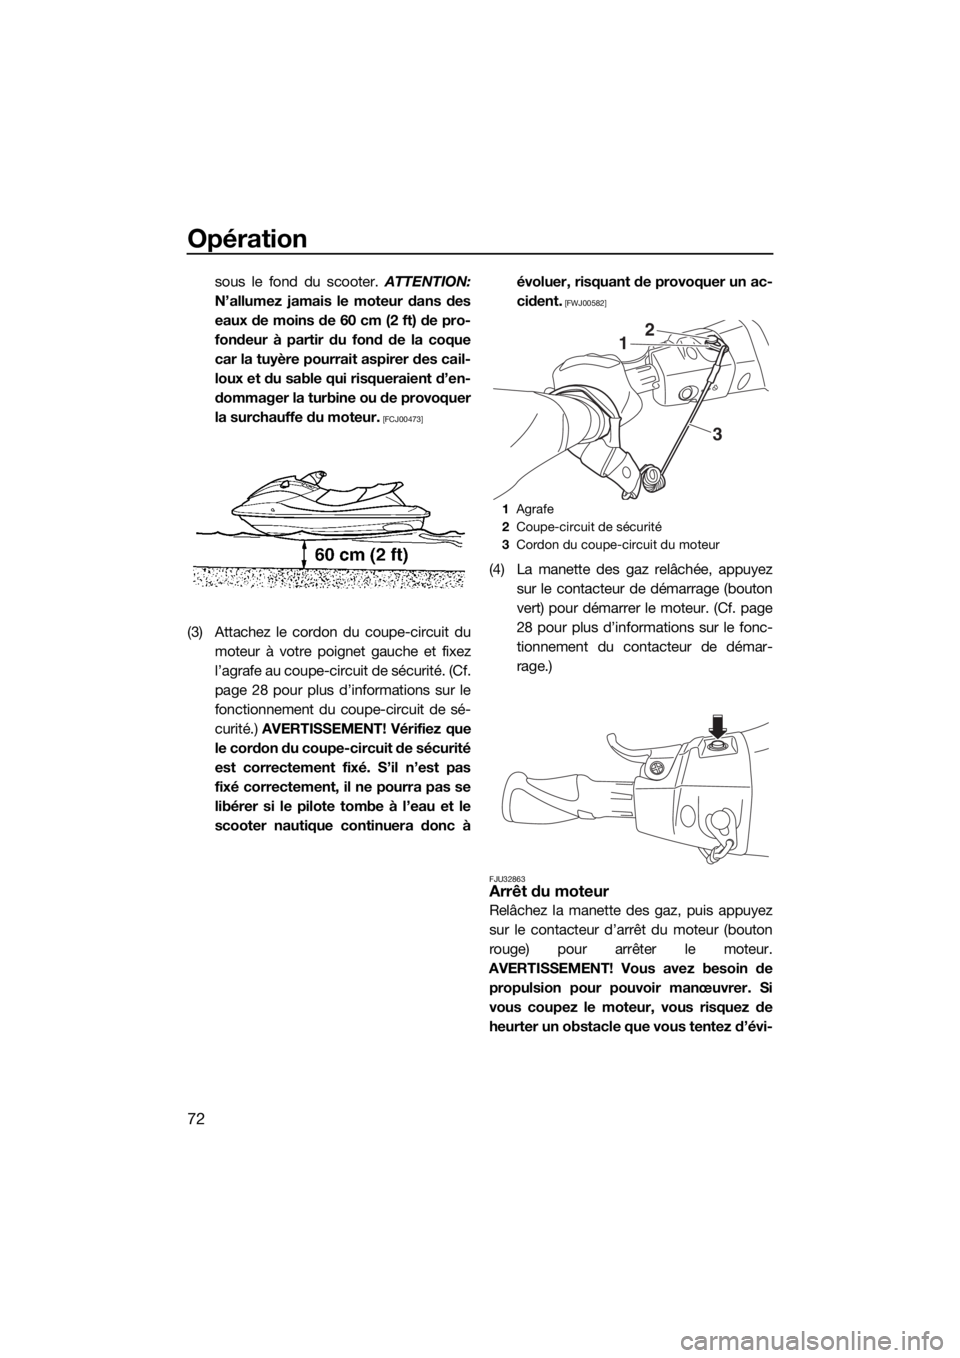 YAMAHA VX 2018  Notices Demploi (in French) Opération
72
sous le fond du scooter. ATTENTION:
N’allumez jamais le moteur dans des
eaux de moins de 60 cm (2 ft) de pro-
fondeur à partir du fond de la coque
car la tuyère pourrait aspirer des 